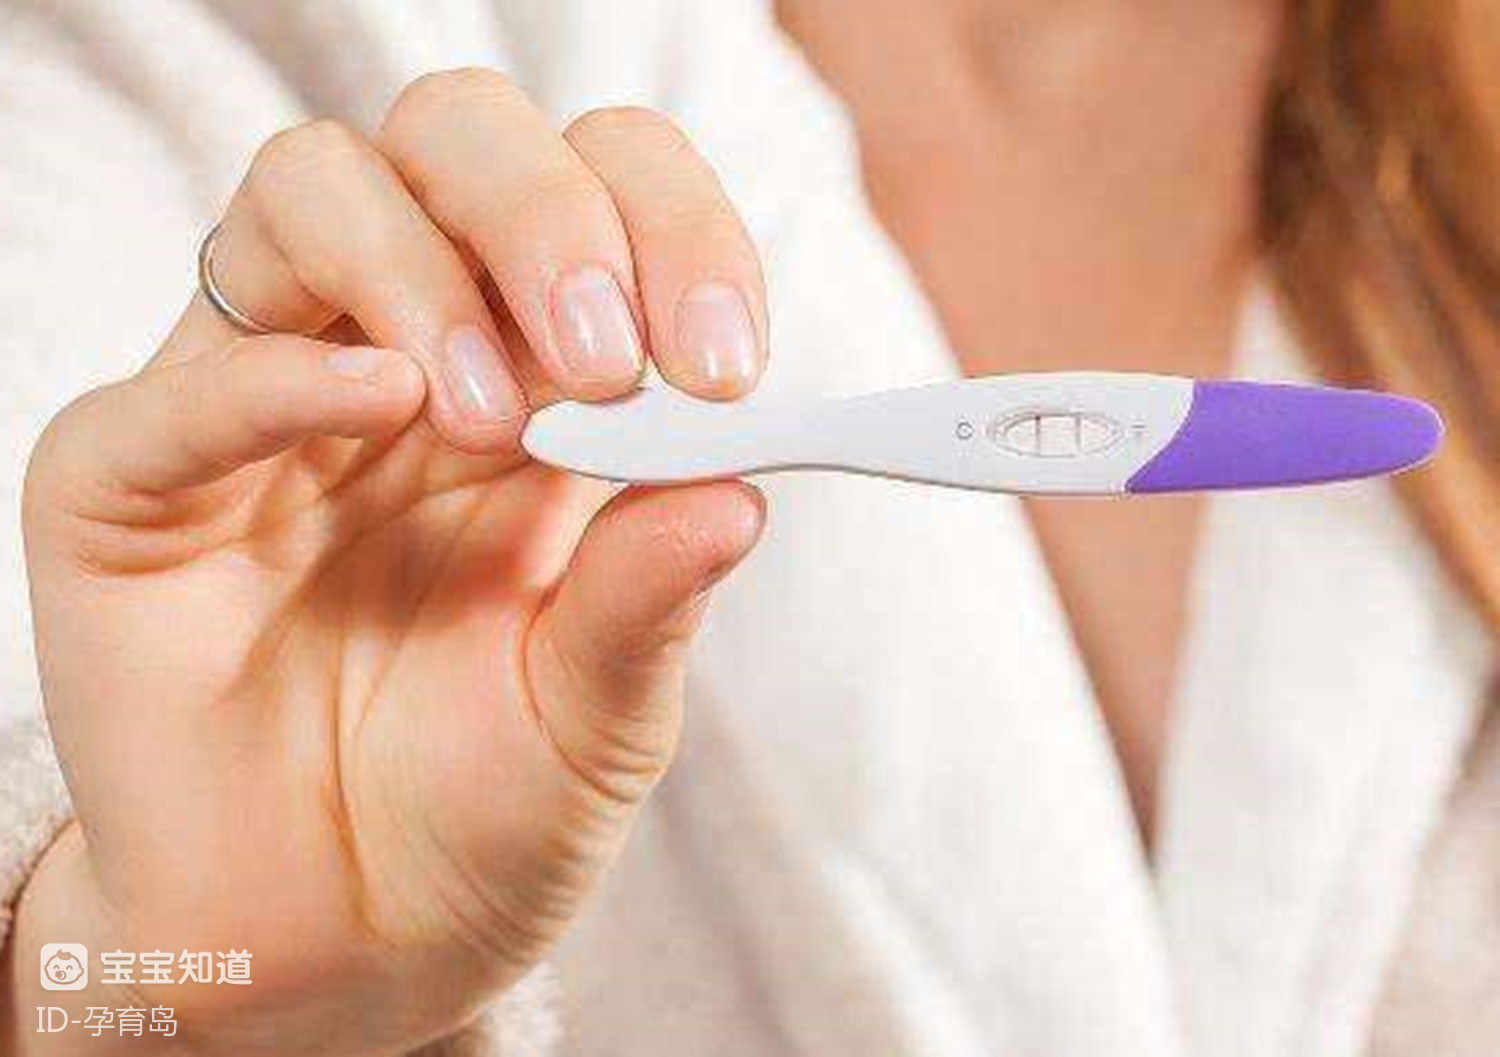 受孕几天能测出 一般事后几天可以测出怀孕 - 汽车时代网